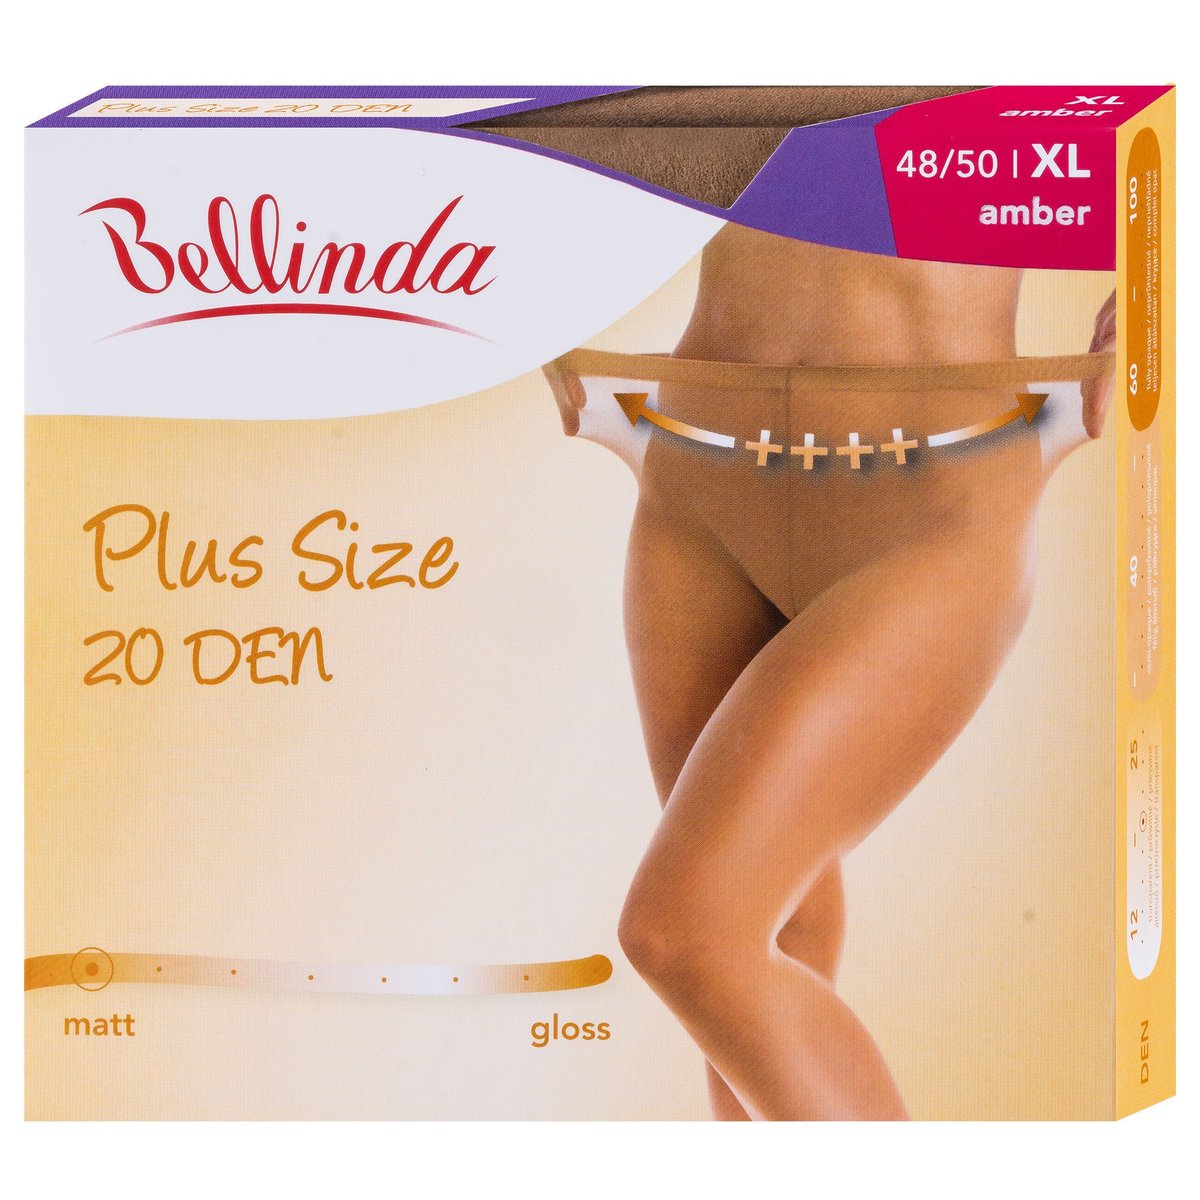 Bellinda Punčochové kalhoty Plus size, tělové, velikost XL